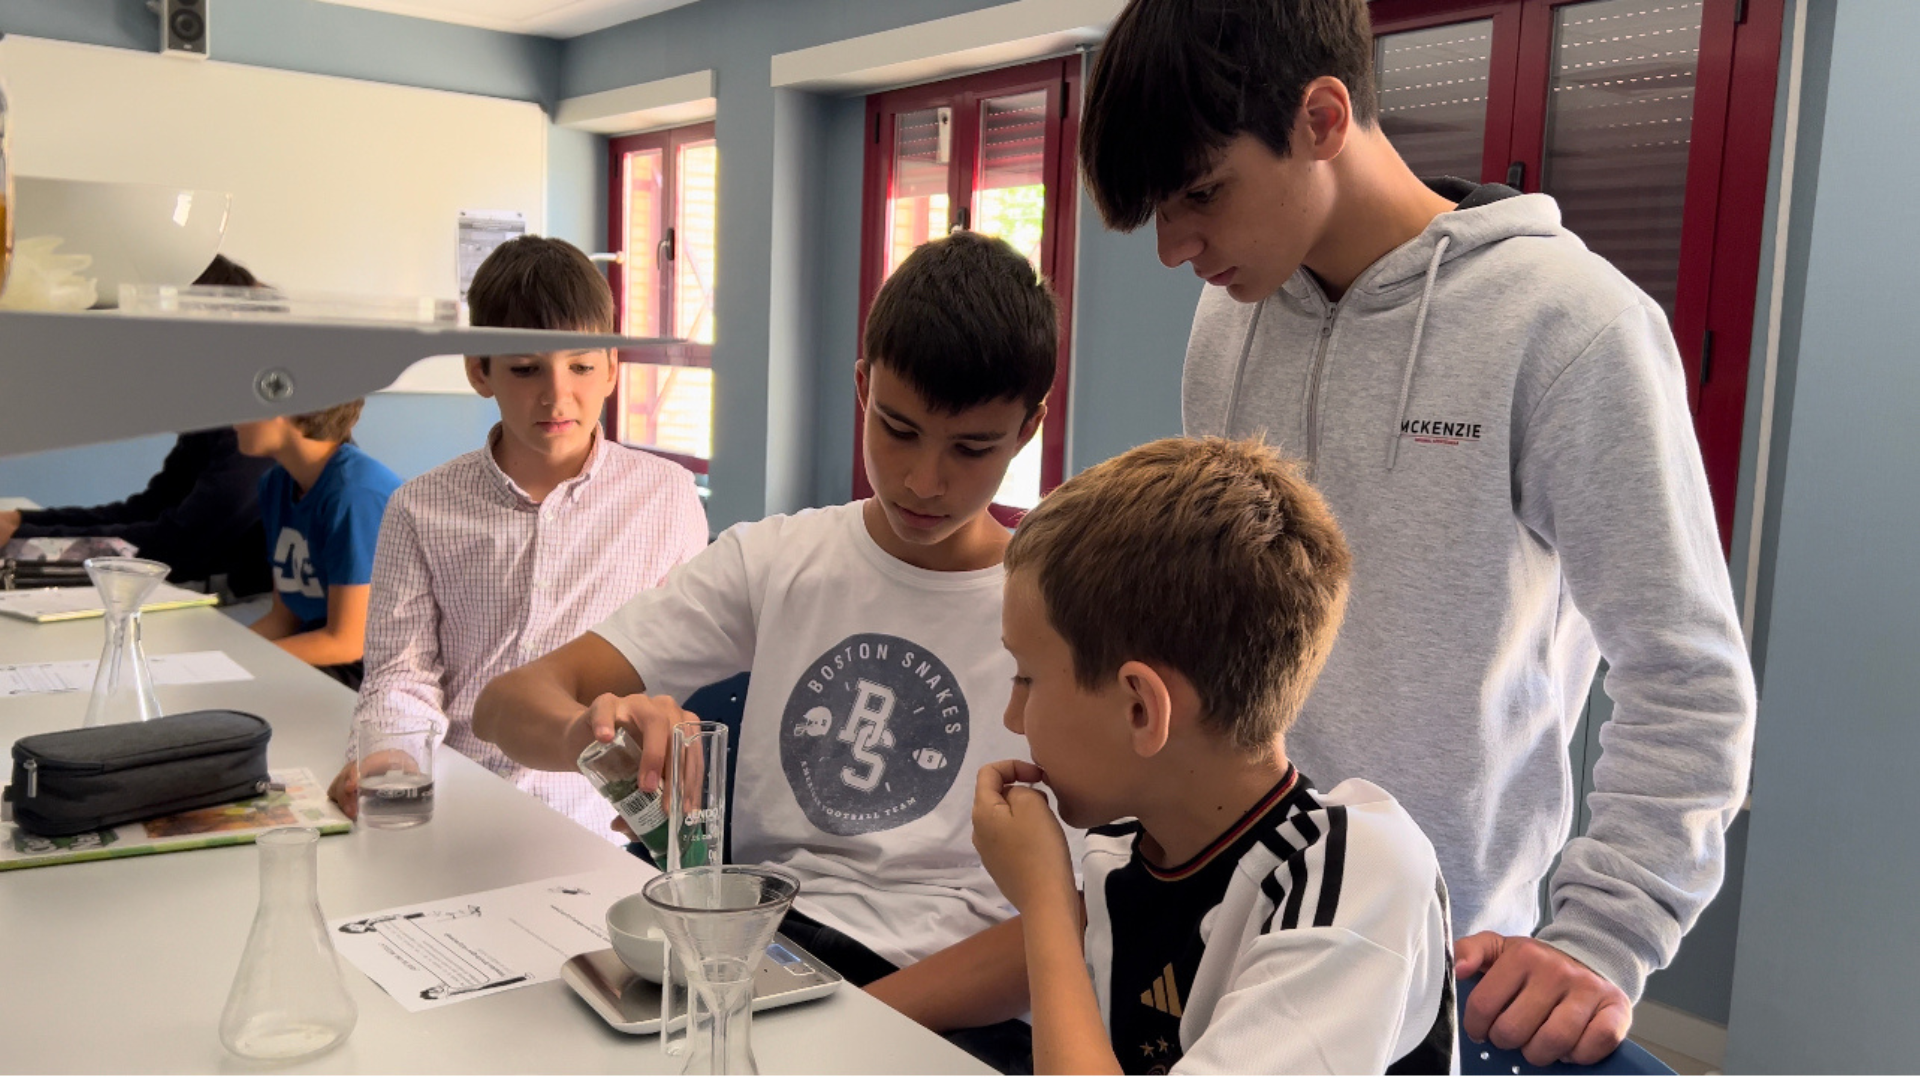 Los alumnos de Primaria y Secundaria del Colegio Aleman de Zaragoza han participado en un taller de ciencia